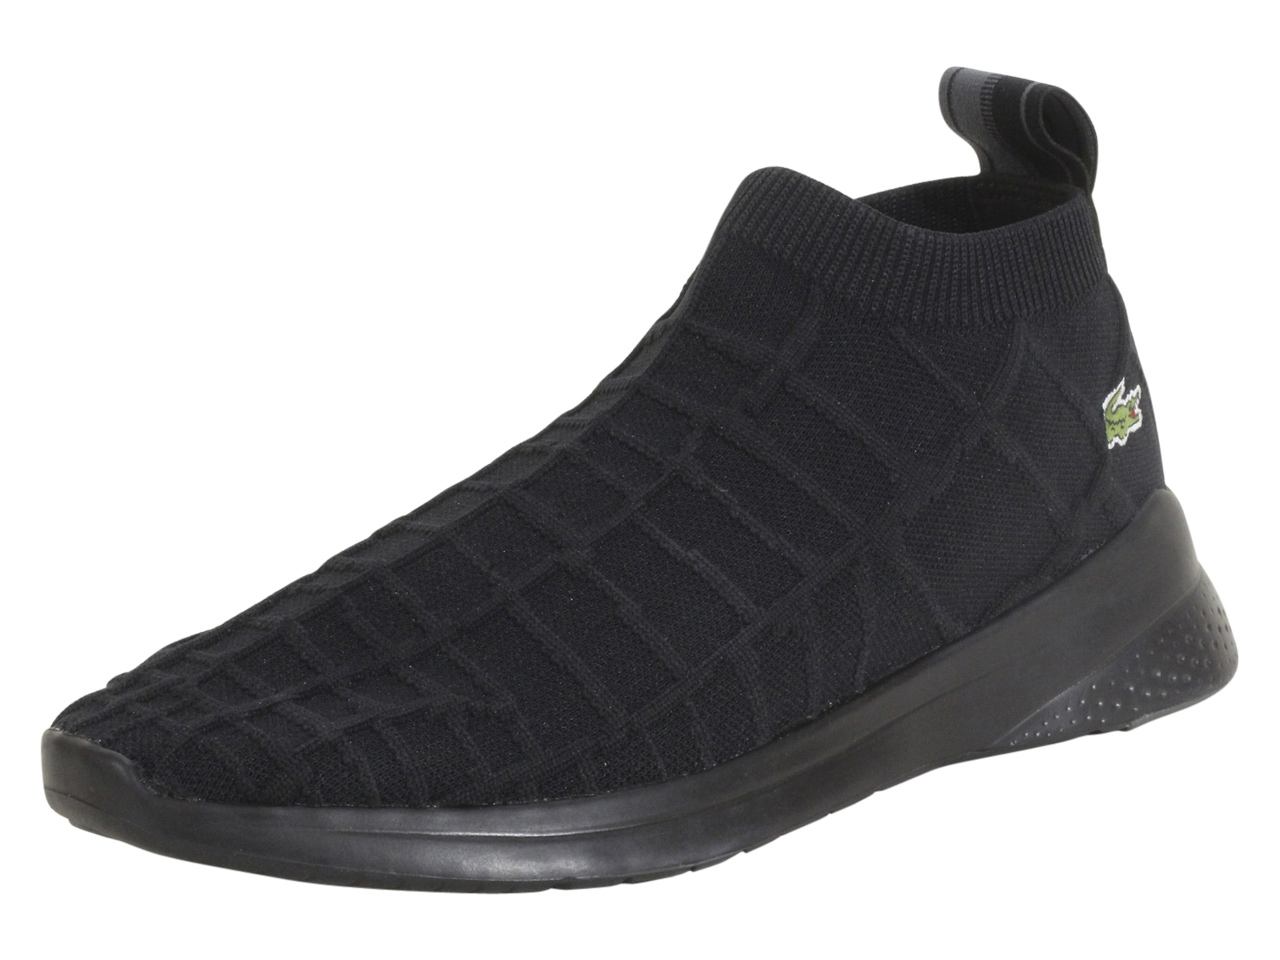 Lacoste LT-Fit-Sock-319 Sneakers Men's Trainers Shoes JoyLot.com